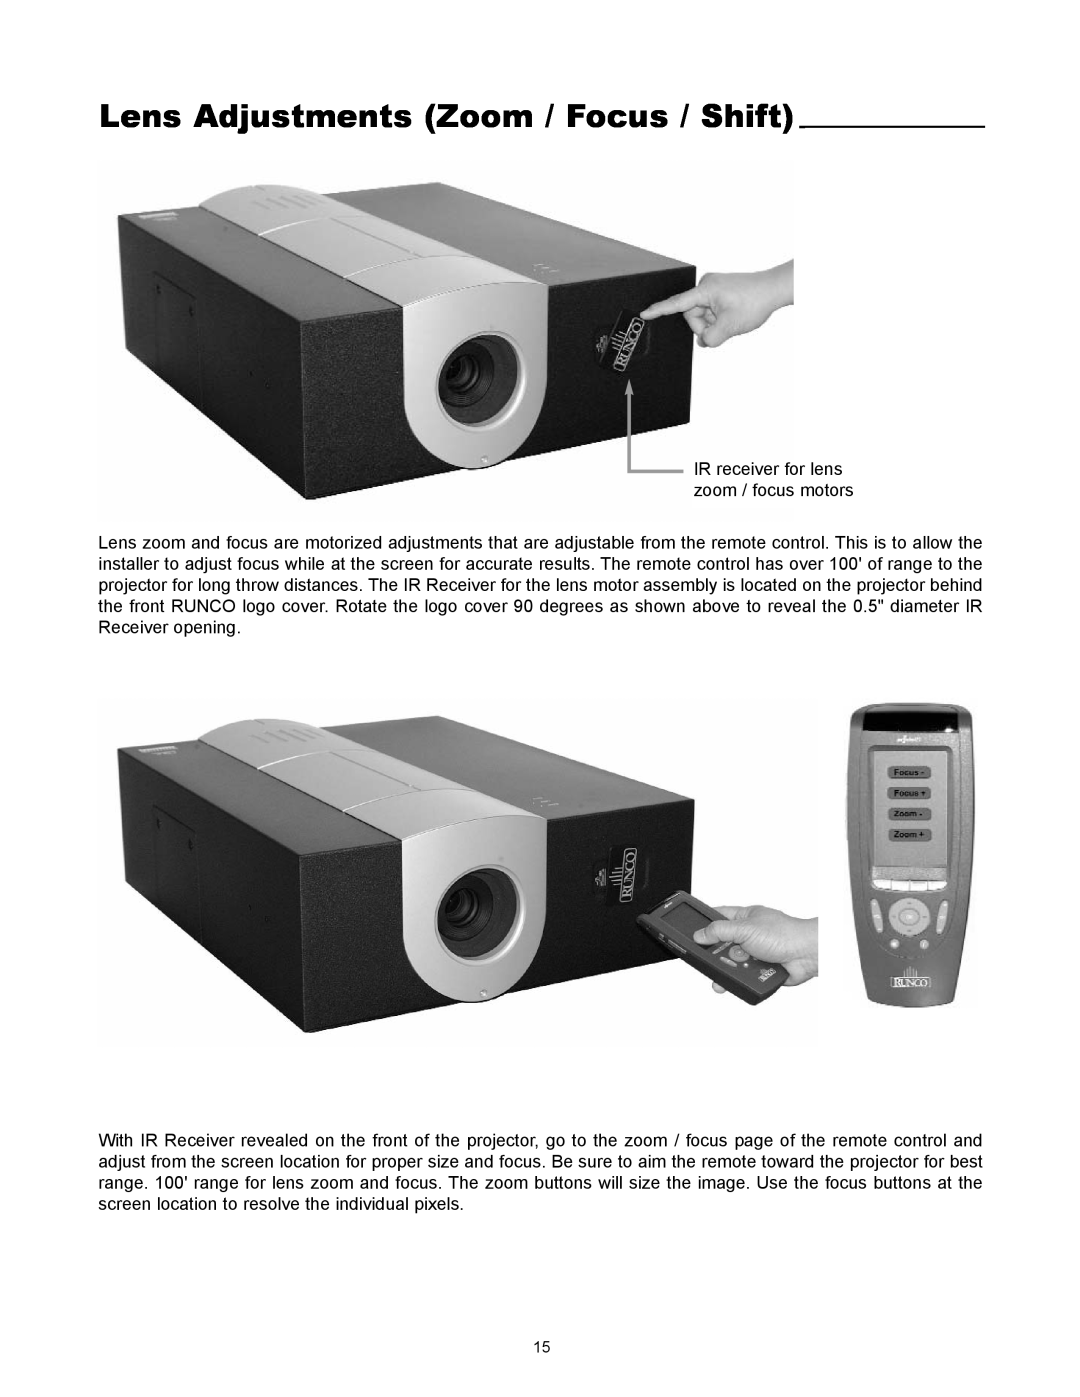 Runco VX-4000ci manual Lens Adjustments Zoom / Focus / Shift 